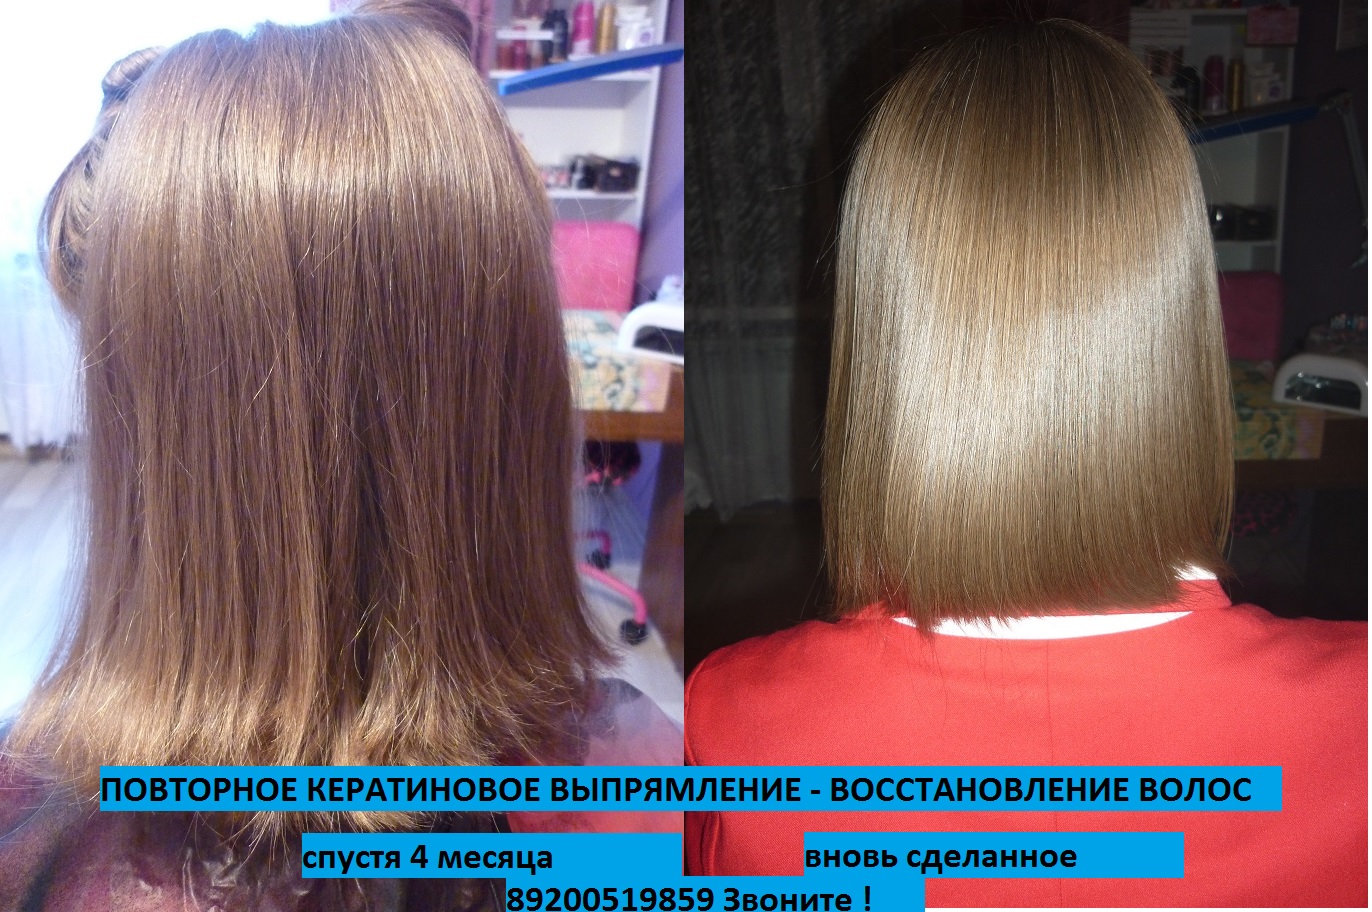 Волосы после кератинового выпрямления фото через 3 месяца